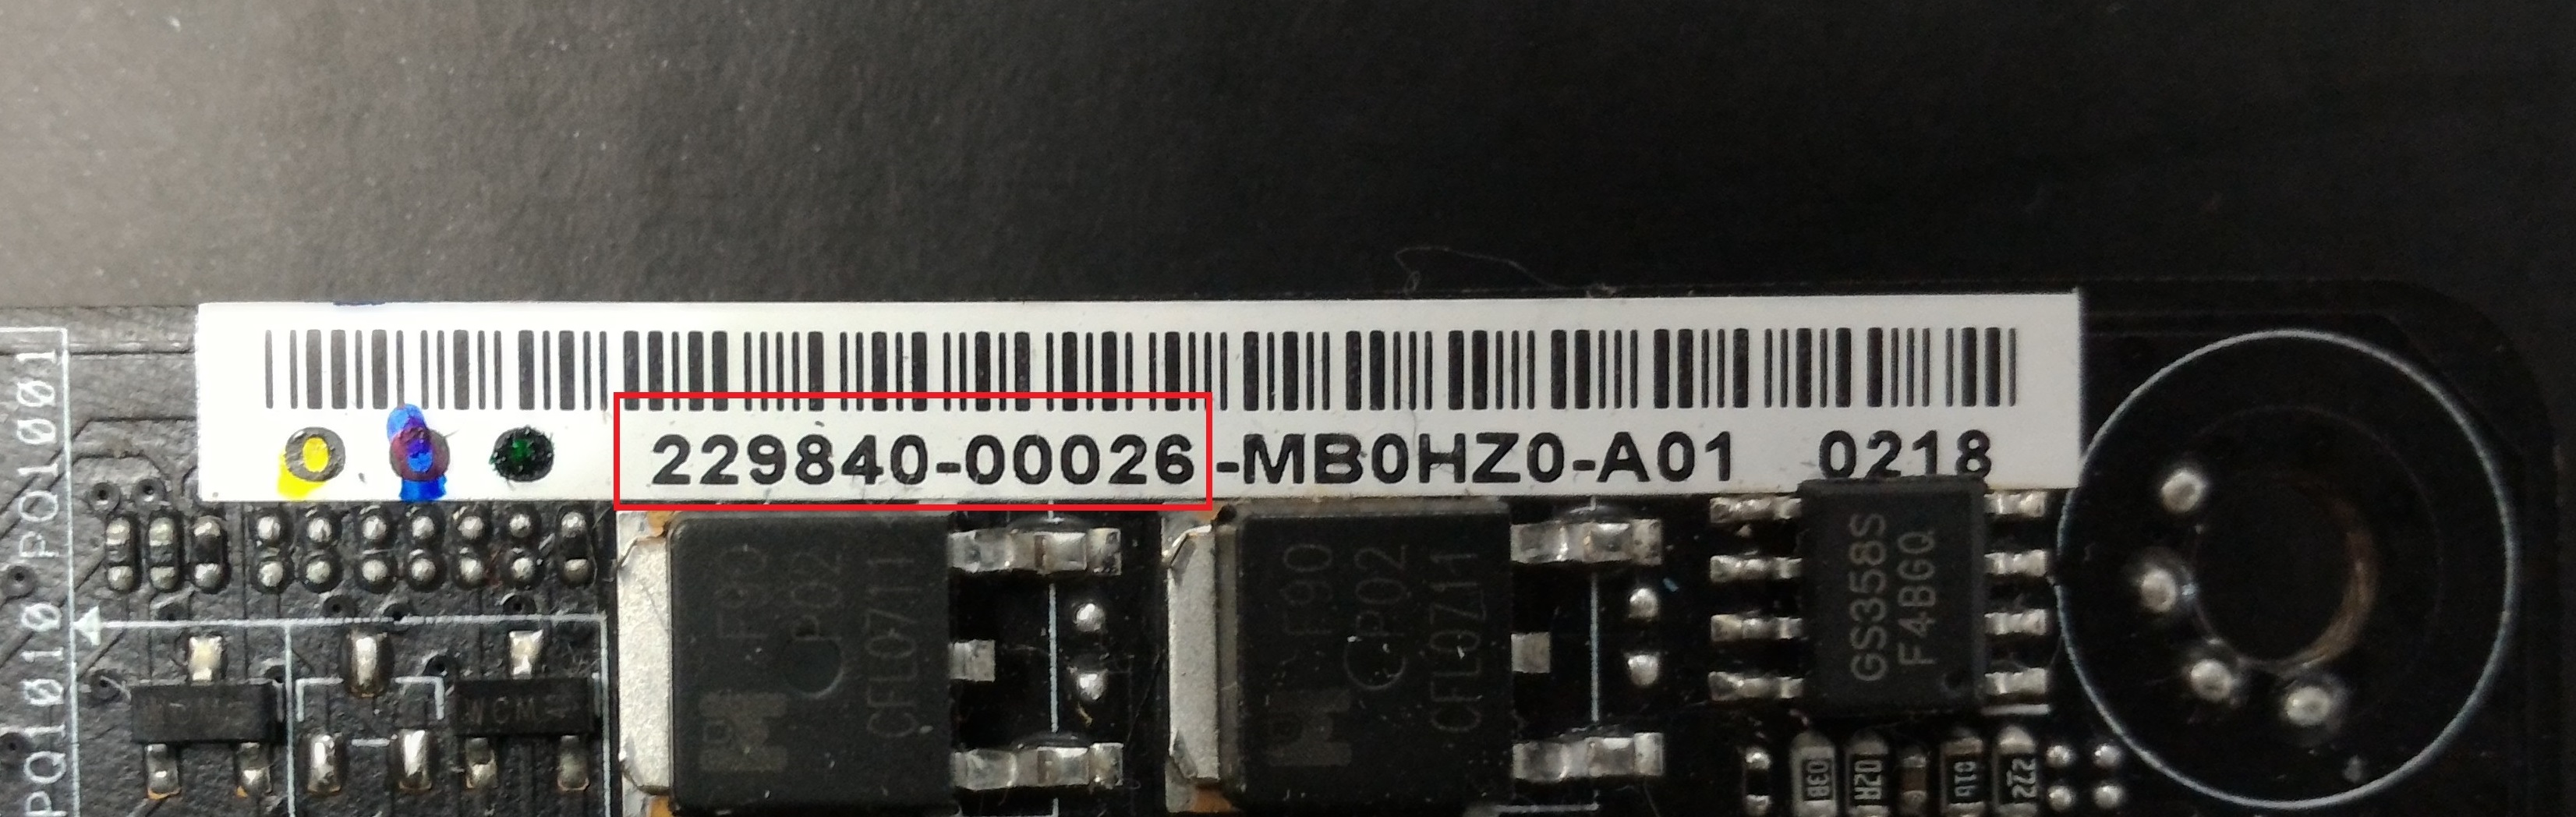 motherboard serial number lookup